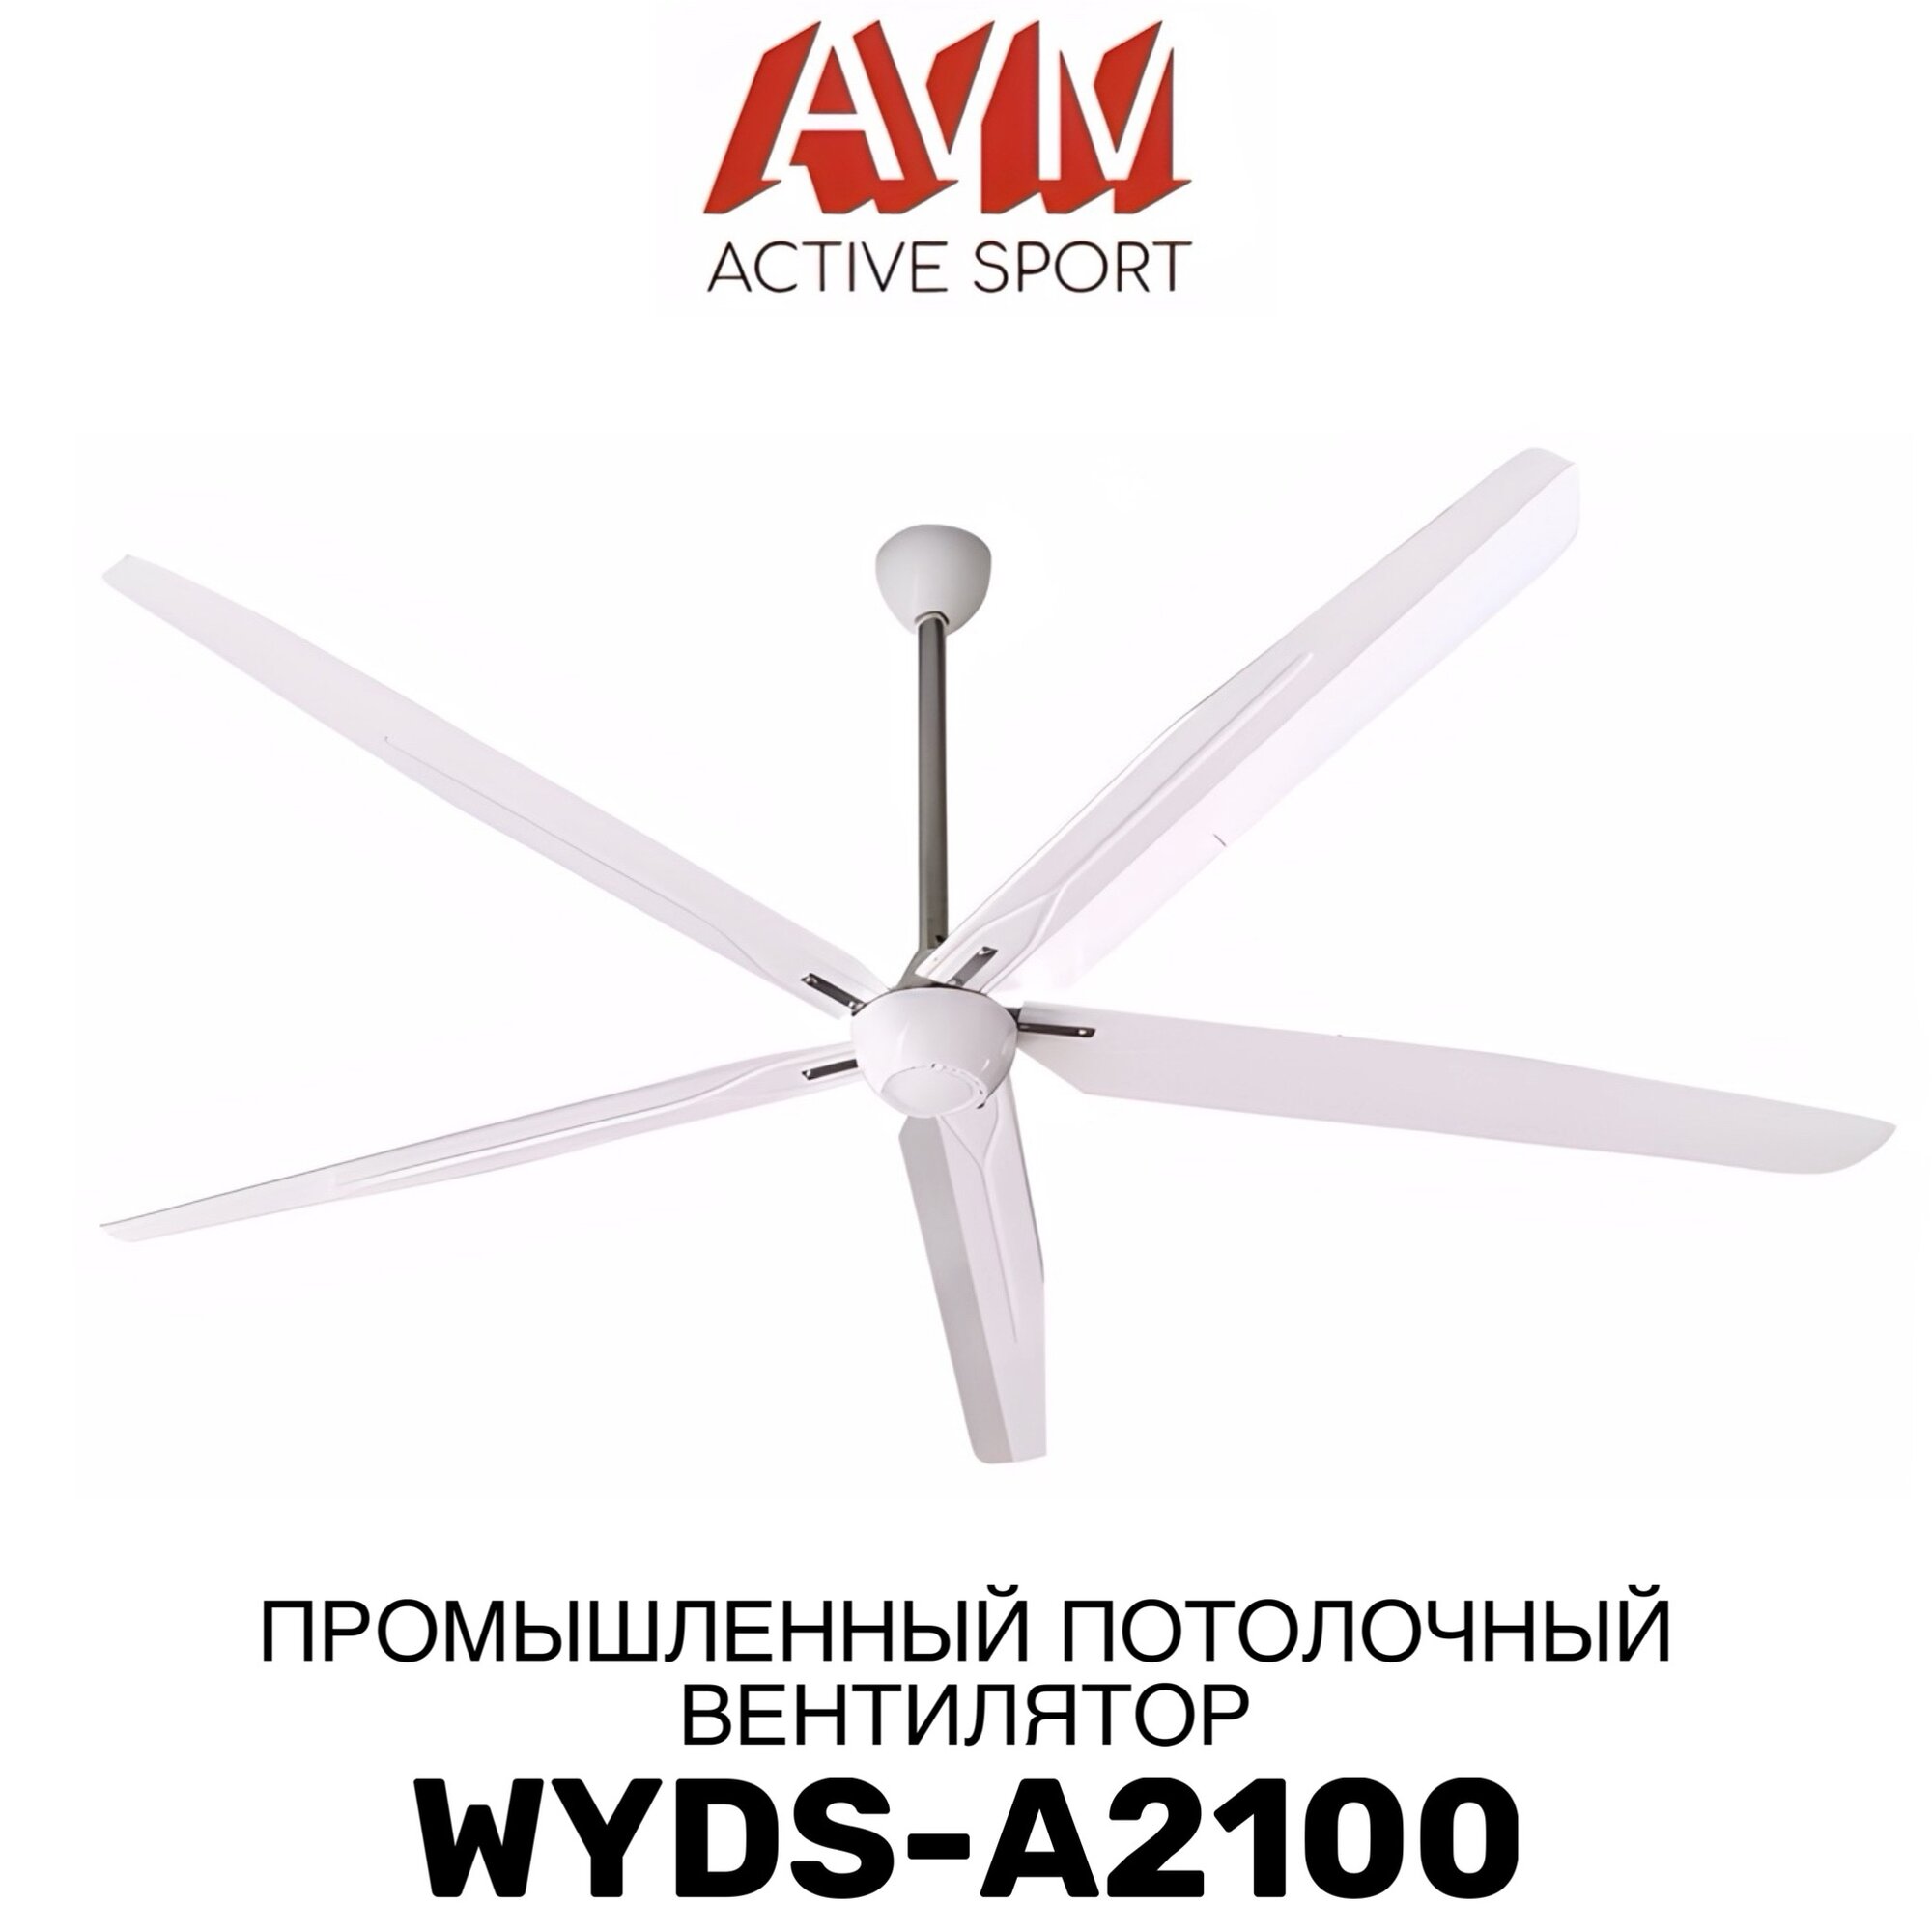 Промышленный потолочный вентилятор WYDS-A2100 с зоной обдува до 150 кв. м